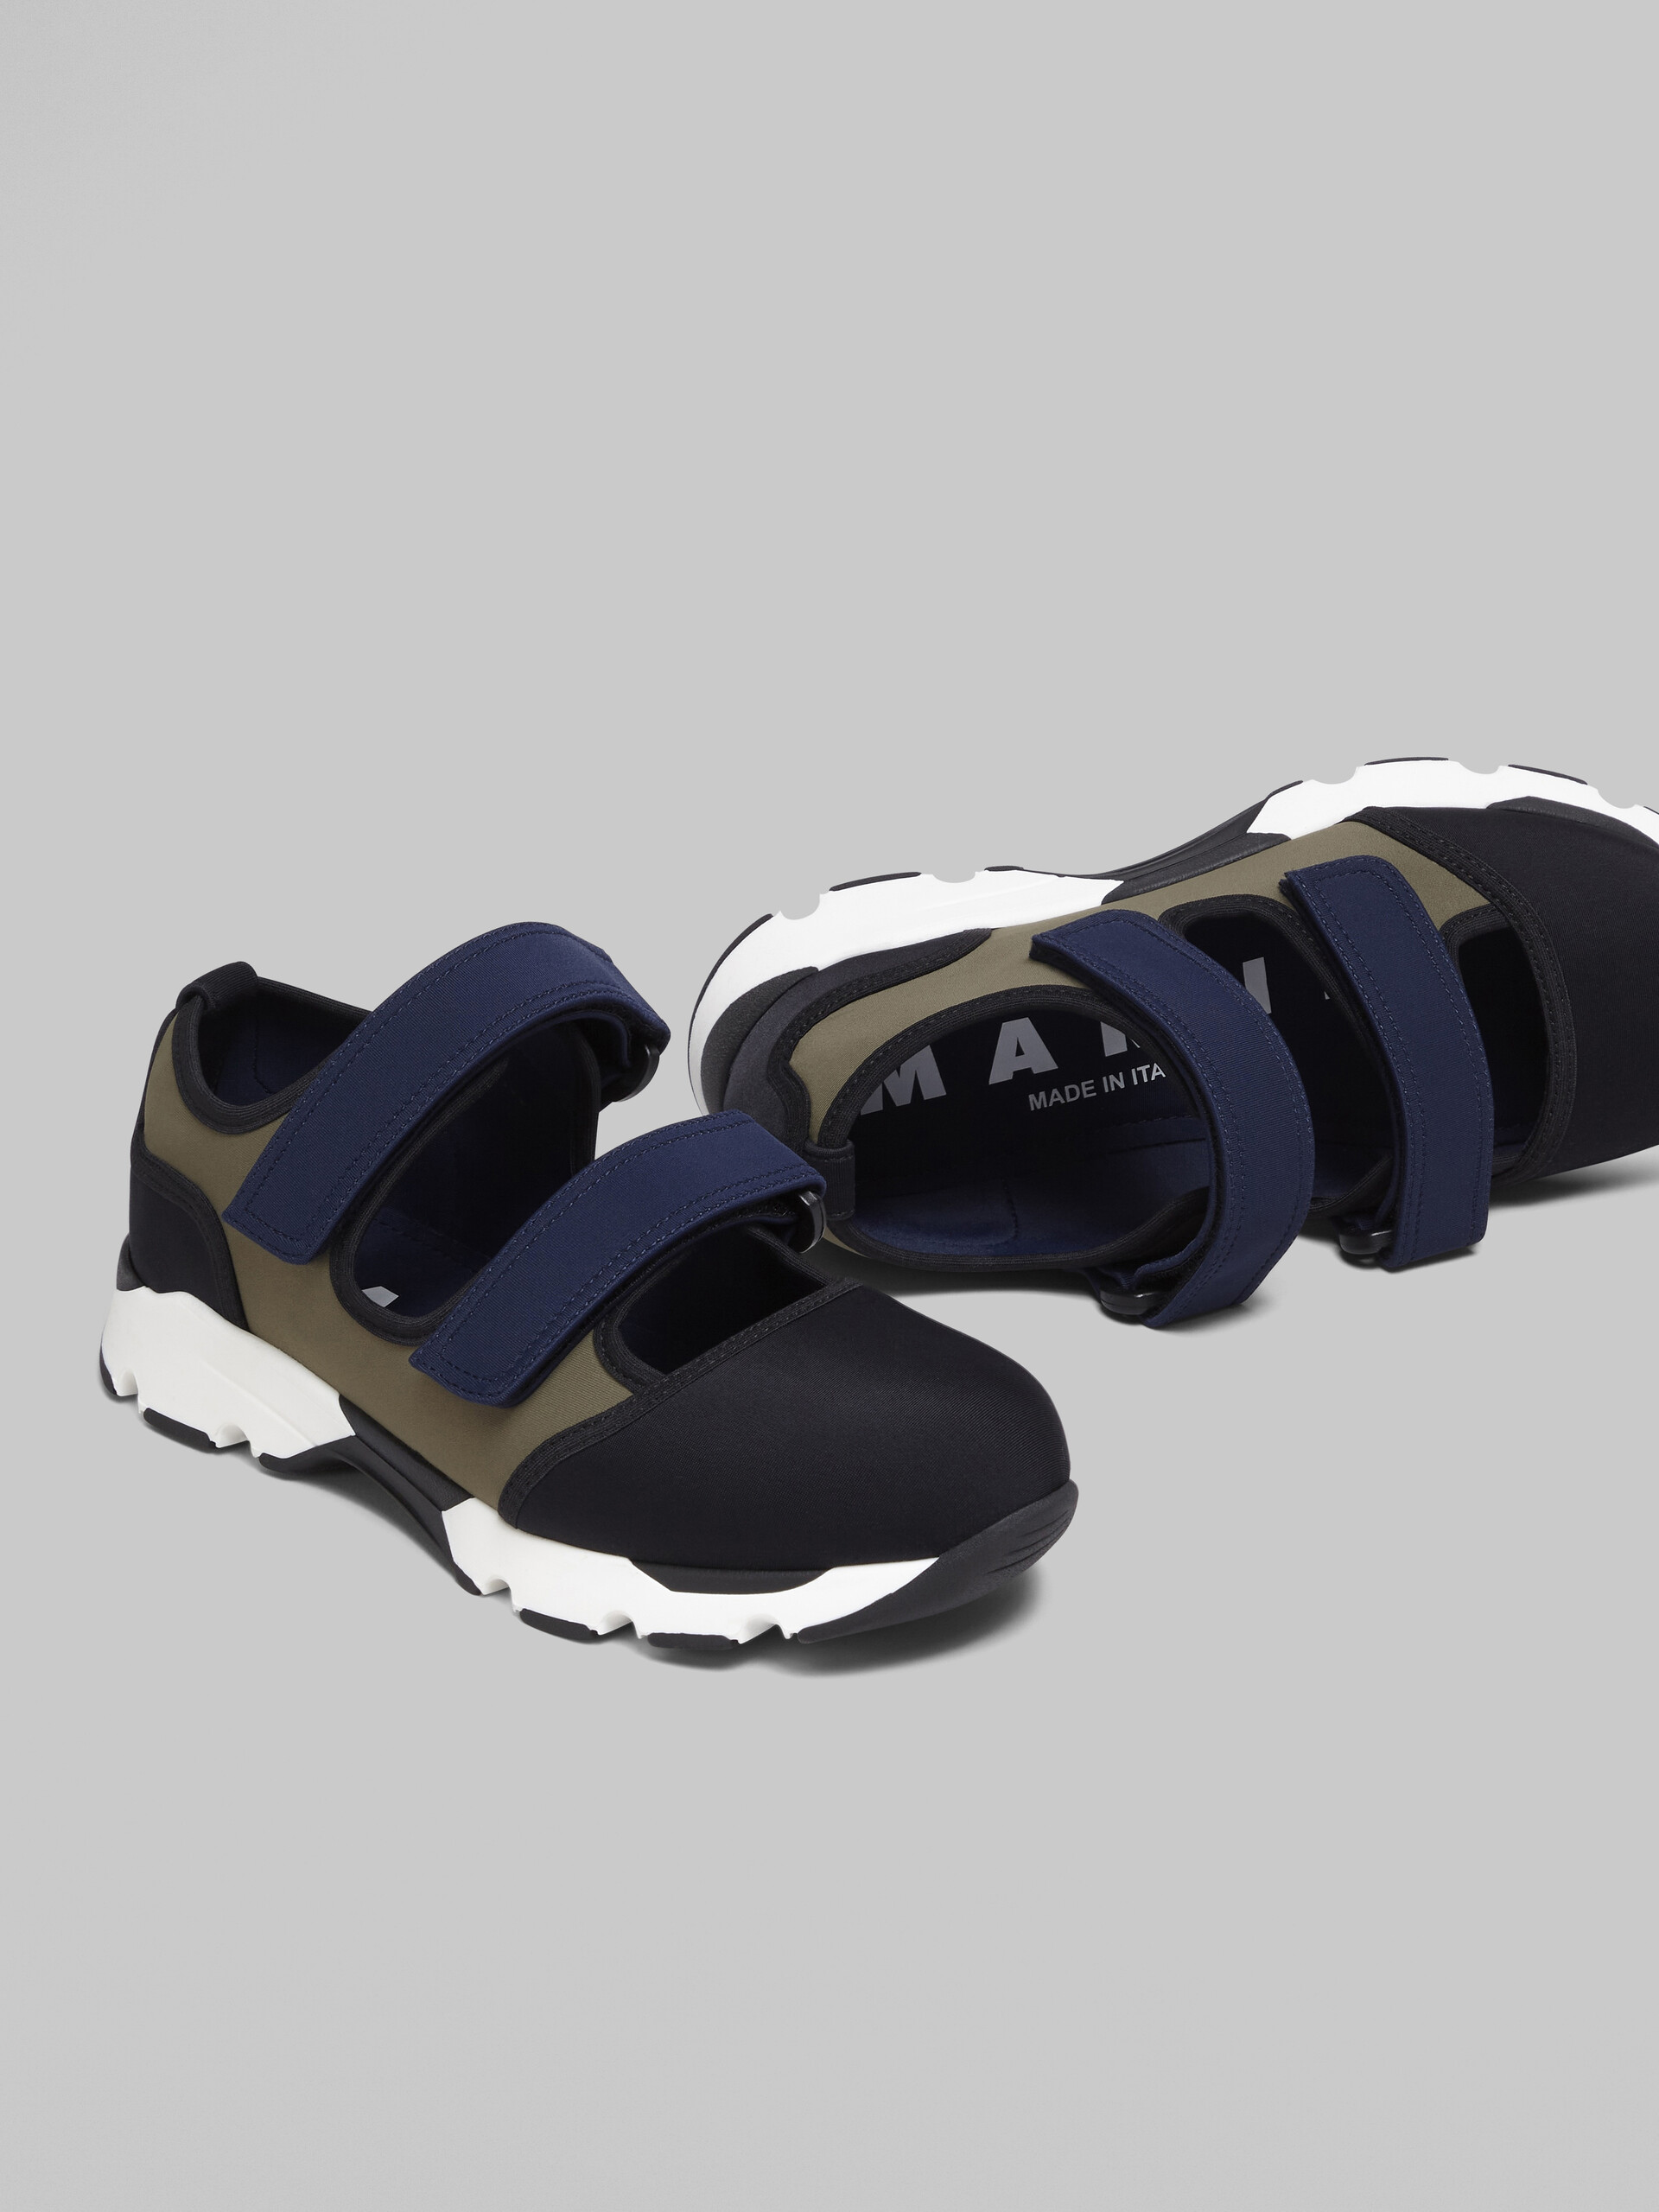 Sneakers en tissu technique noir, vert et bleu avec brides auto-agrippantes - Sneakers - Image 5